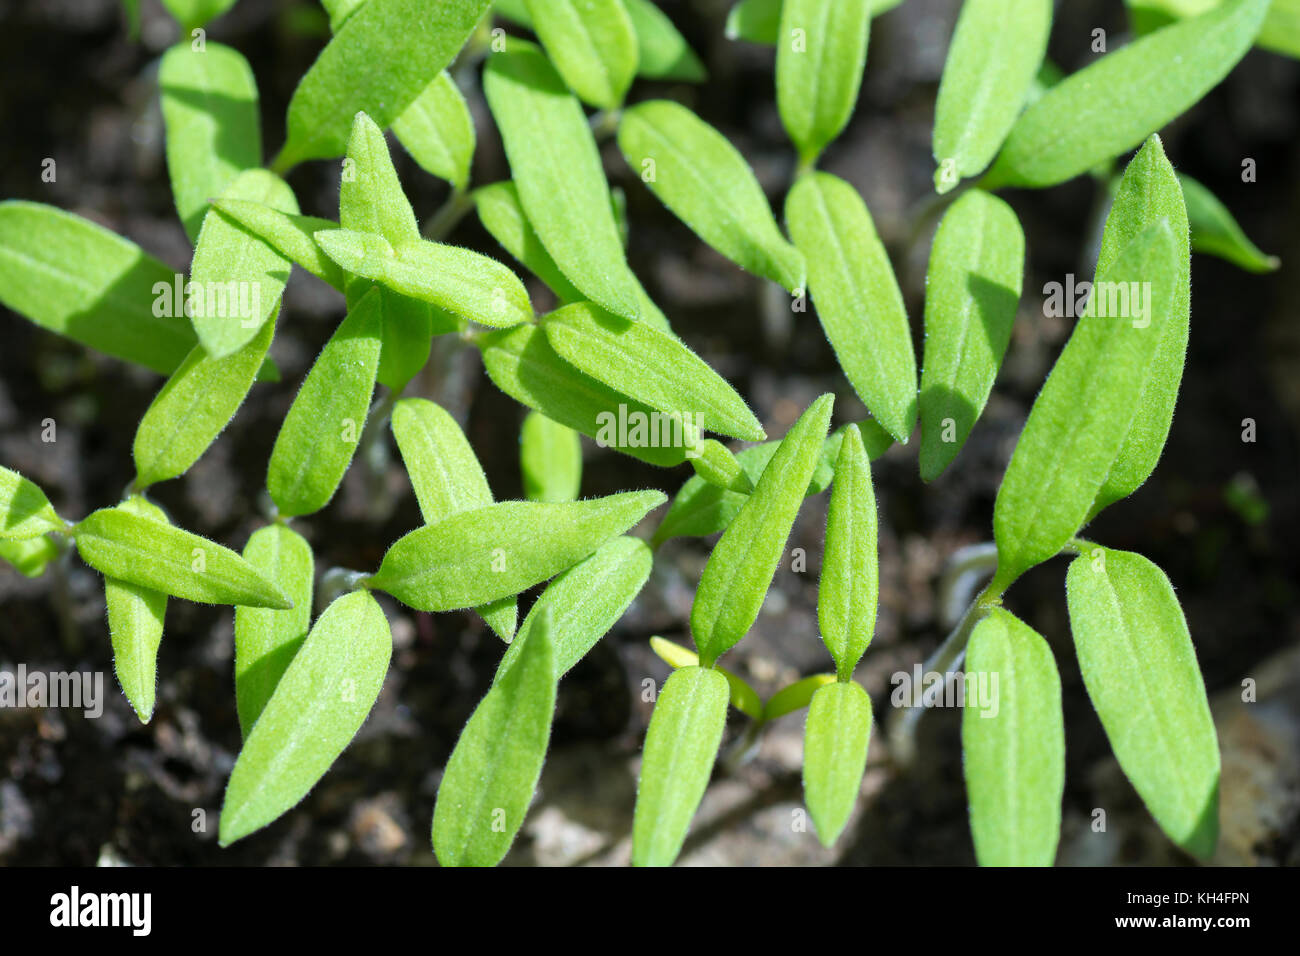 Green sprout crecen desde el suelo sobre un fondo oscuro. Foto de stock